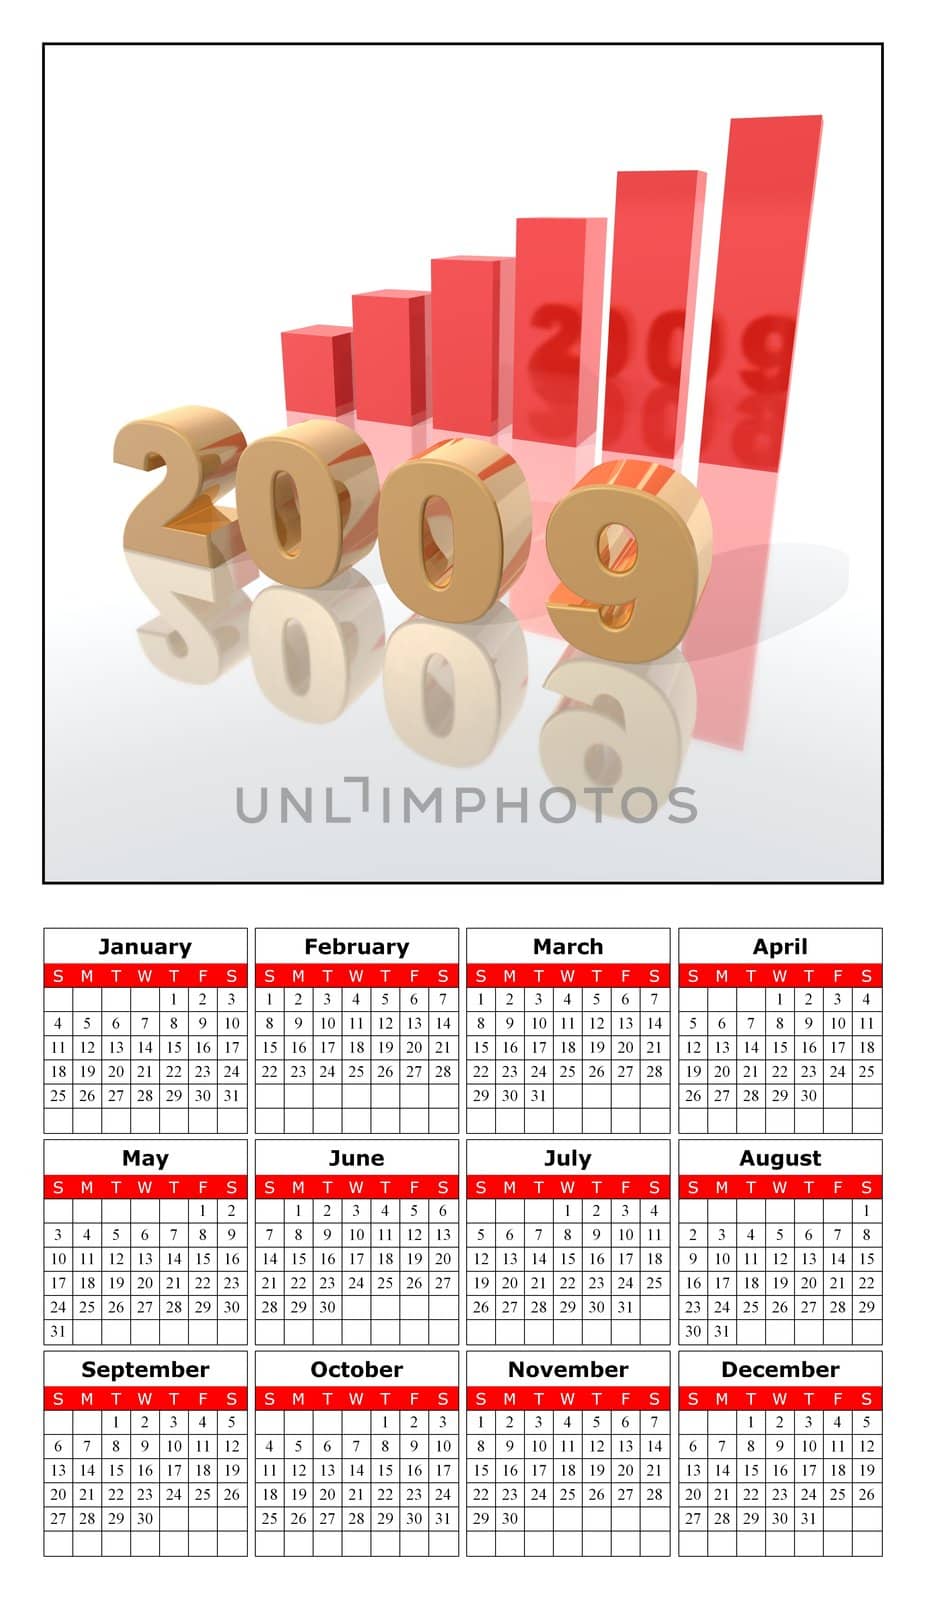 2009 calendar by jbouzou